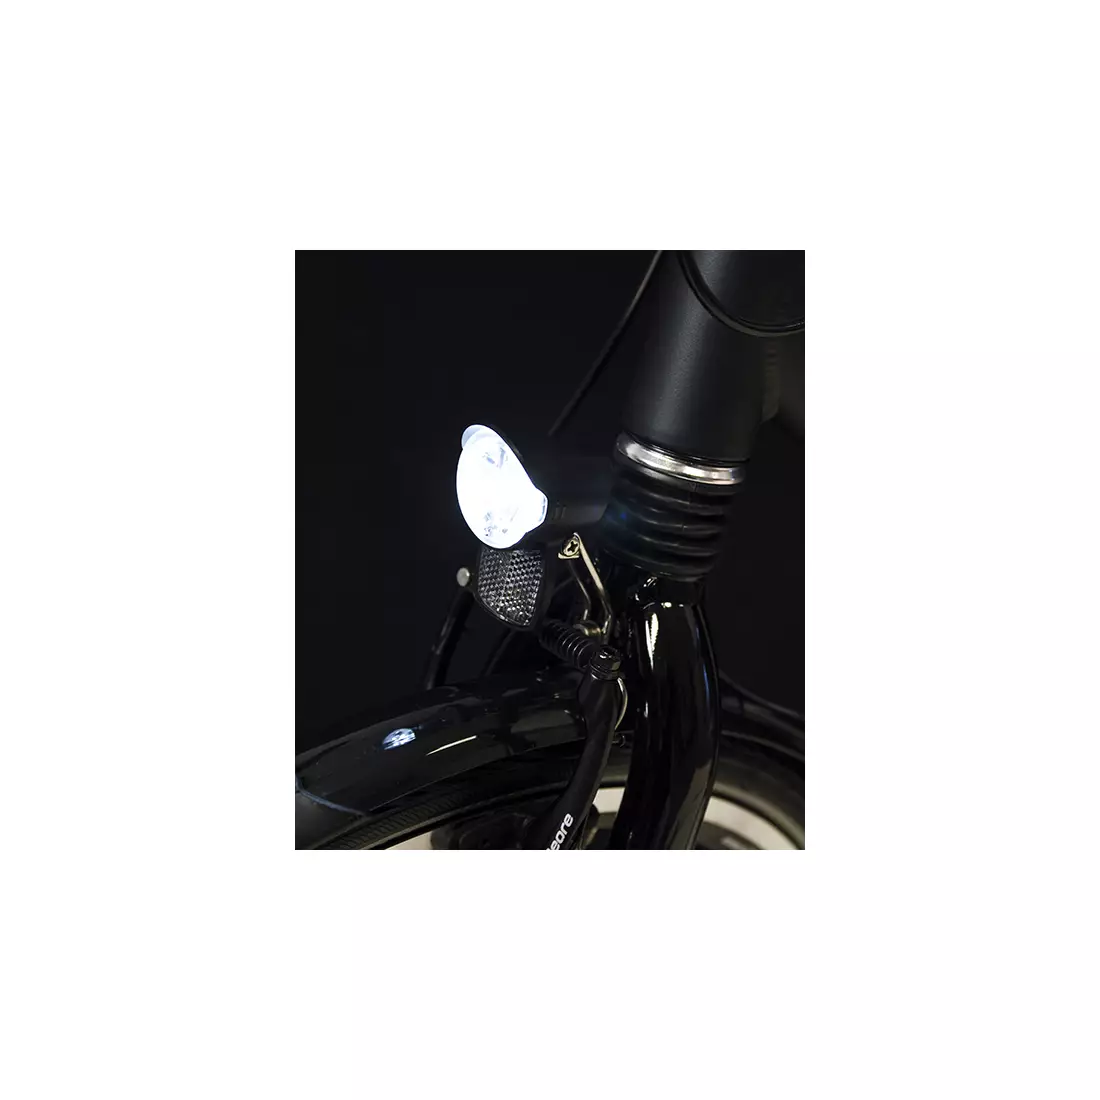 Lampka przednia SPANNINGA BRIO 15 luxów/80 lumenów pod dynamo SNG-H634008